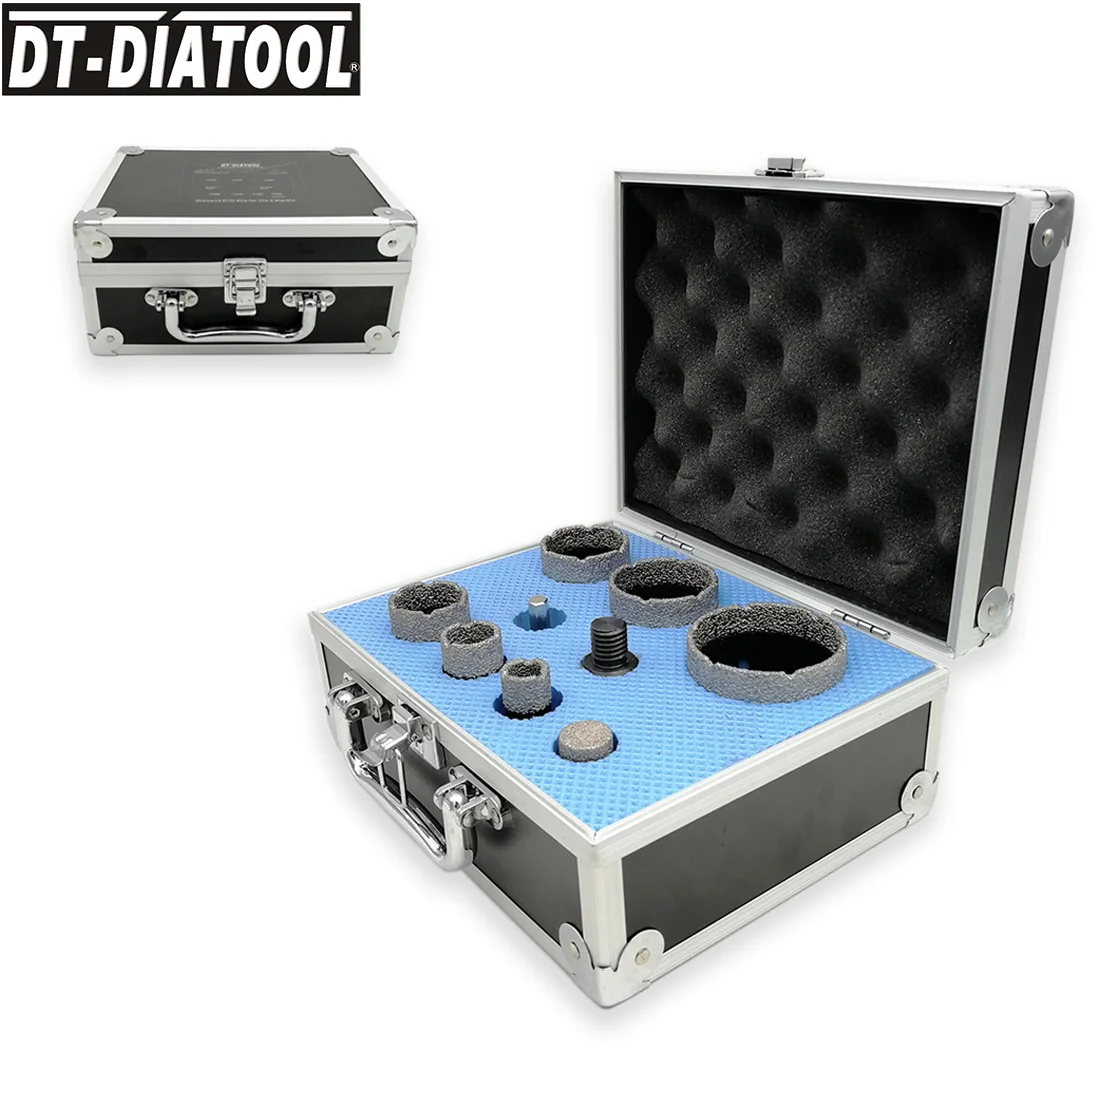 DT-DIATOOL 9 шт./комплект 5/8-11 резьбы Вакуумной Пайки Алмазные Сверла Набор многоразовых отверстий держатели для сверл для сверления мрамора бит